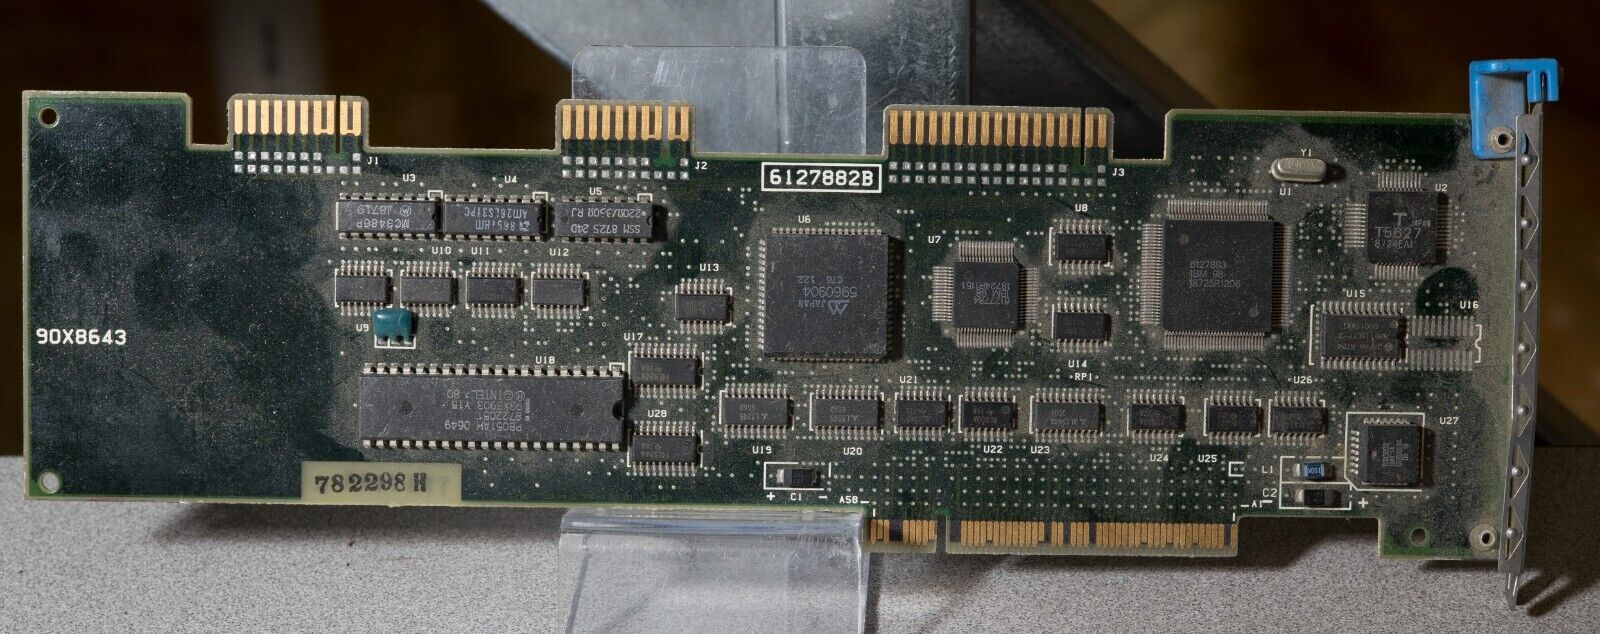 Vintage IBM 90X8643 microchannel MFM ST-506 controller 16 bit MCA ISA306